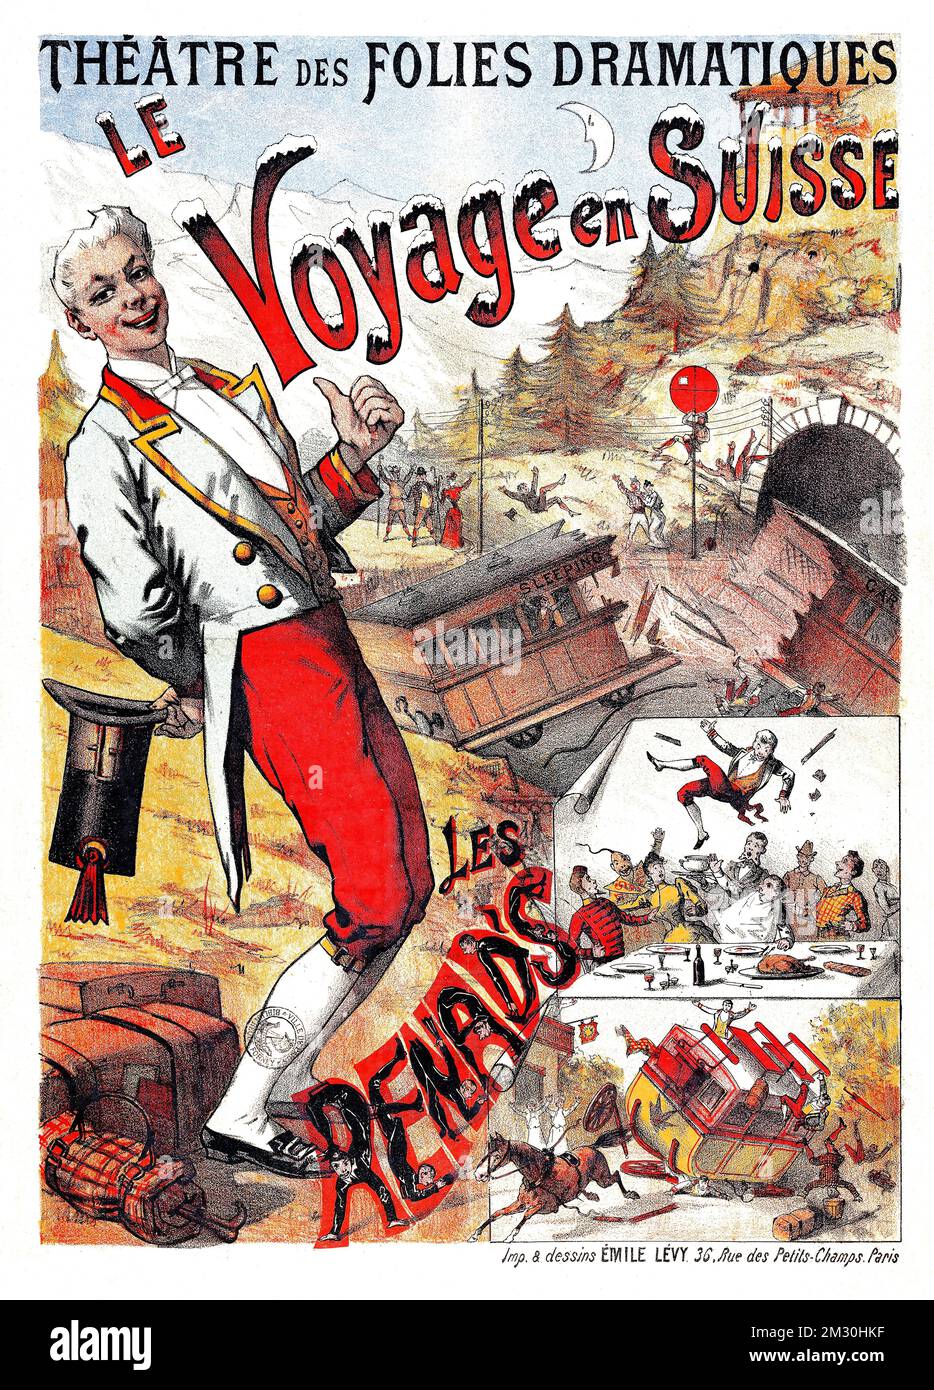 Altes Theaterposter - Le Voyage en Suisse - Theater der dramatischen Folies. Reisen Sie in die Schweiz. Les Renad's - Vintage-Poster von Emile Levy, 1892 Stockfoto